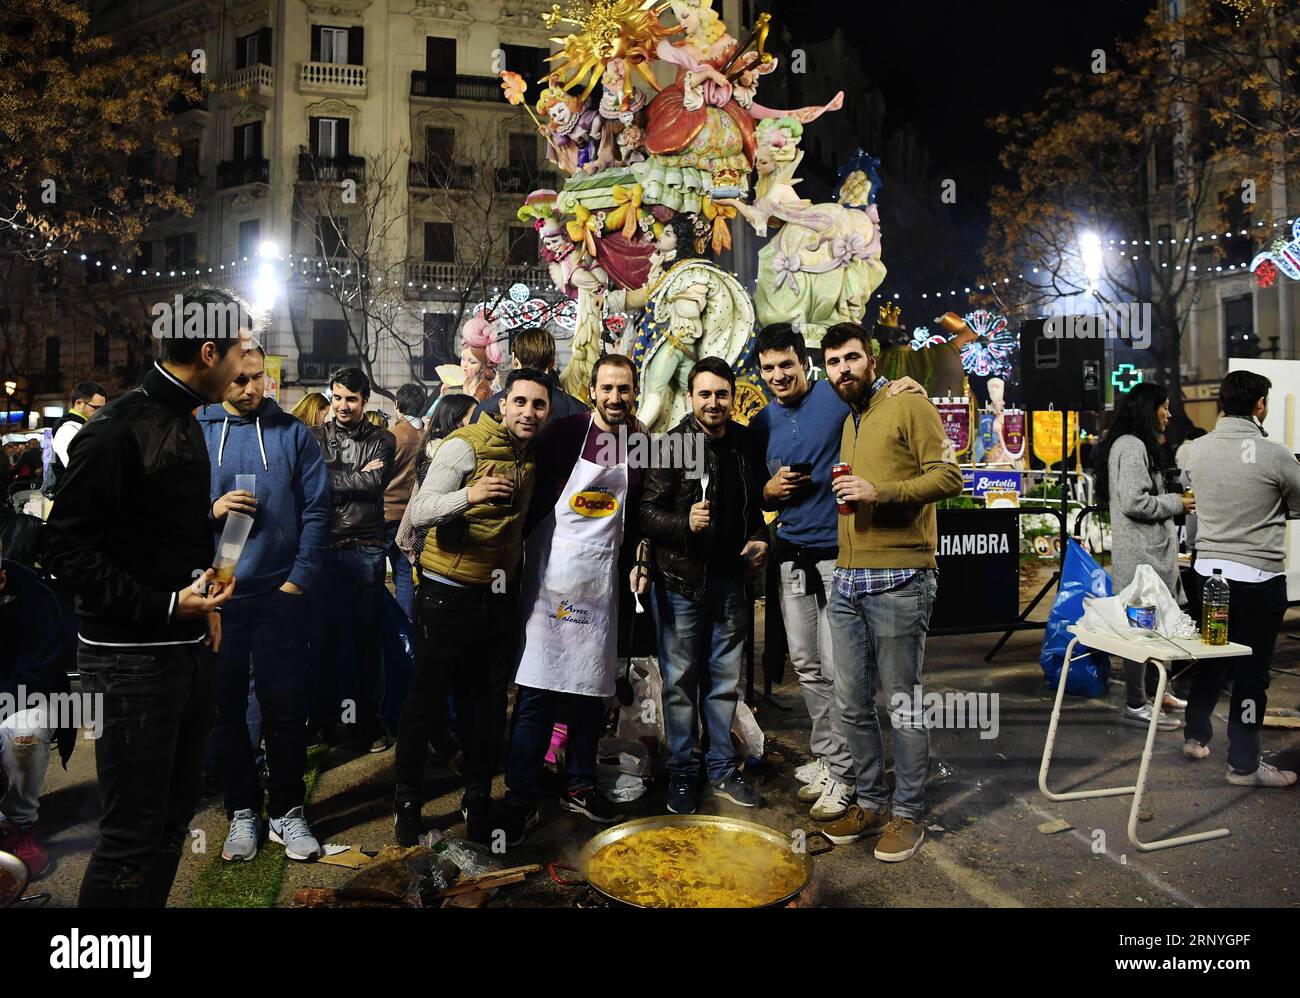 (180319) -- VALENCIA, 19. März 2018 -- am 18. März 2018 fotografieren Menschen vor einer gigantischen Puppe in der Straße von Valencia, Spanien. Das Fallas Festival ist ein traditionelles fest mit einer Ausstellung von gigantischen Puppen, gut gekleideten Paraden und Feuerwerken in Valencia, Spanien. )(yk) SPANIEN-VALENCIA-DAS FALLAS FESTIVAL GuoxQiuda PUBLICATIONxNOTxINxCHN Stockfoto